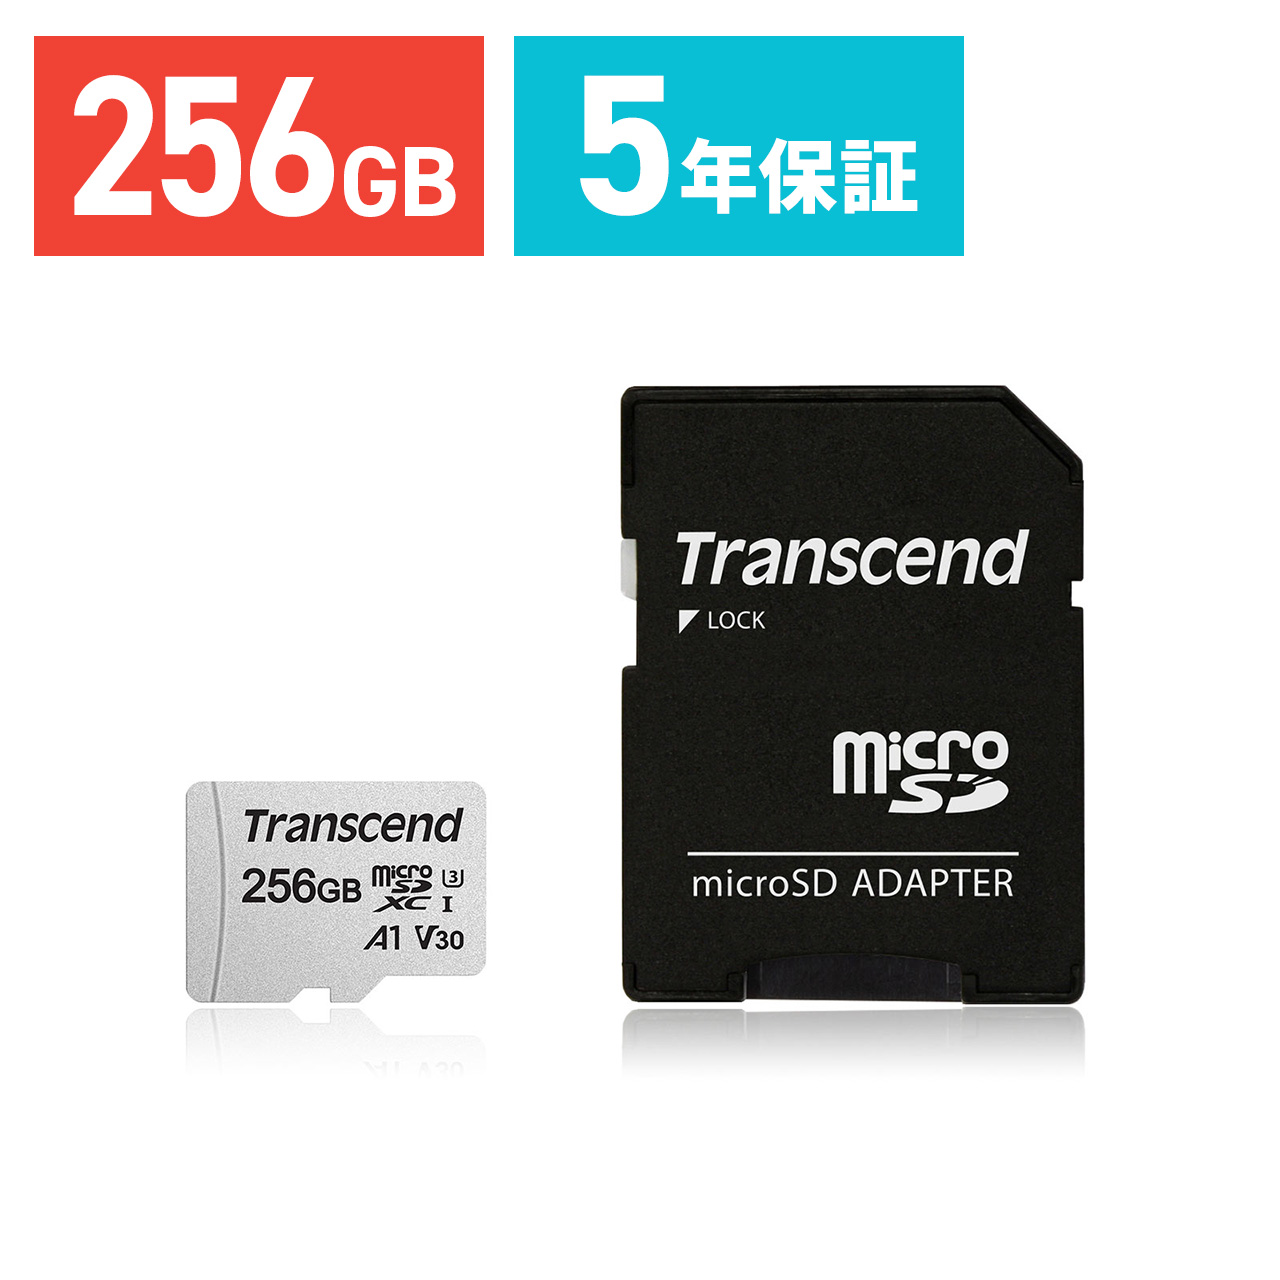 microSDカード マイクロSD 256GB Transcend トランセンド microSDXC Class10 UHS-I U3 UHS-I U1 V30 A1 SD変換アダプタ付き TS256GUSD300S-A